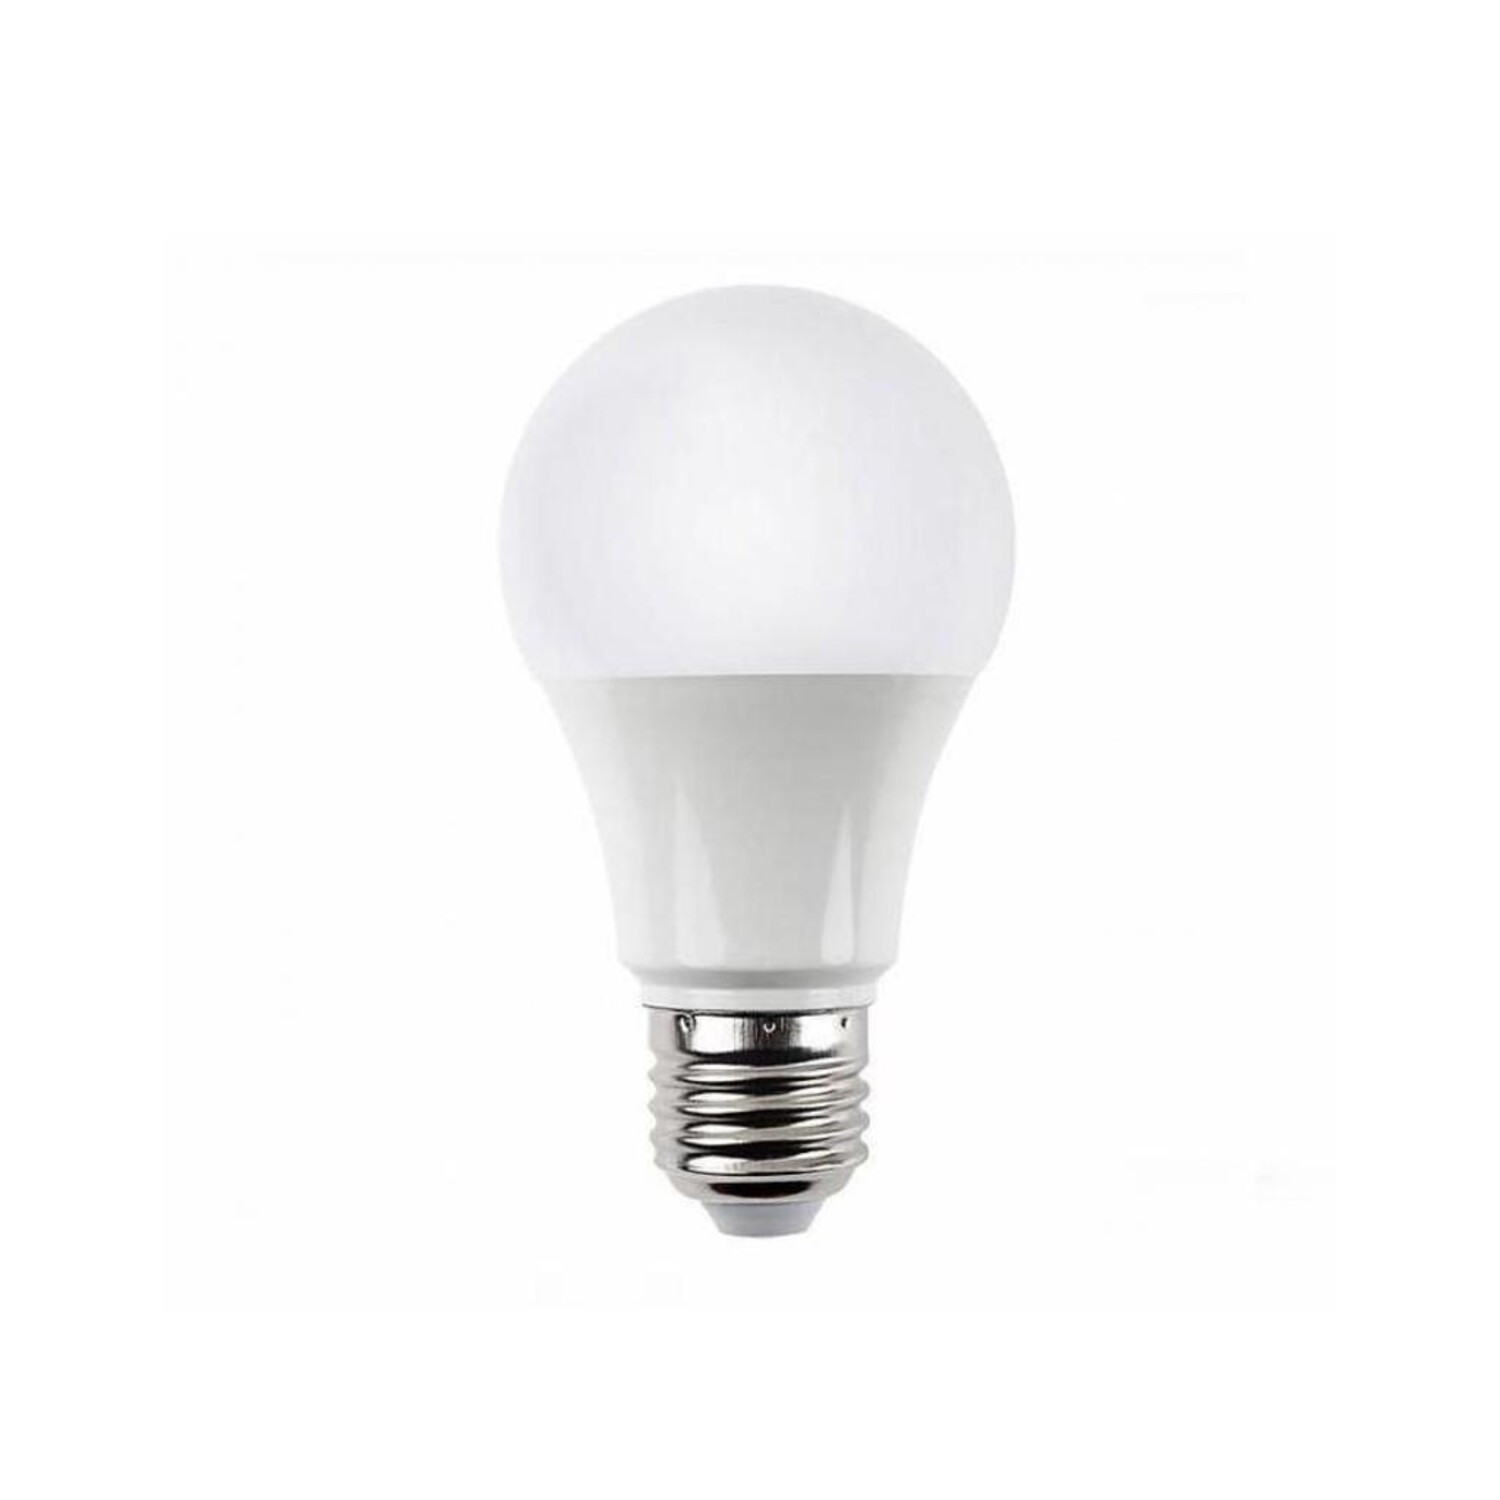 LED Lampe E27 11,5W 3000K Warmweiß entspricht 74W 